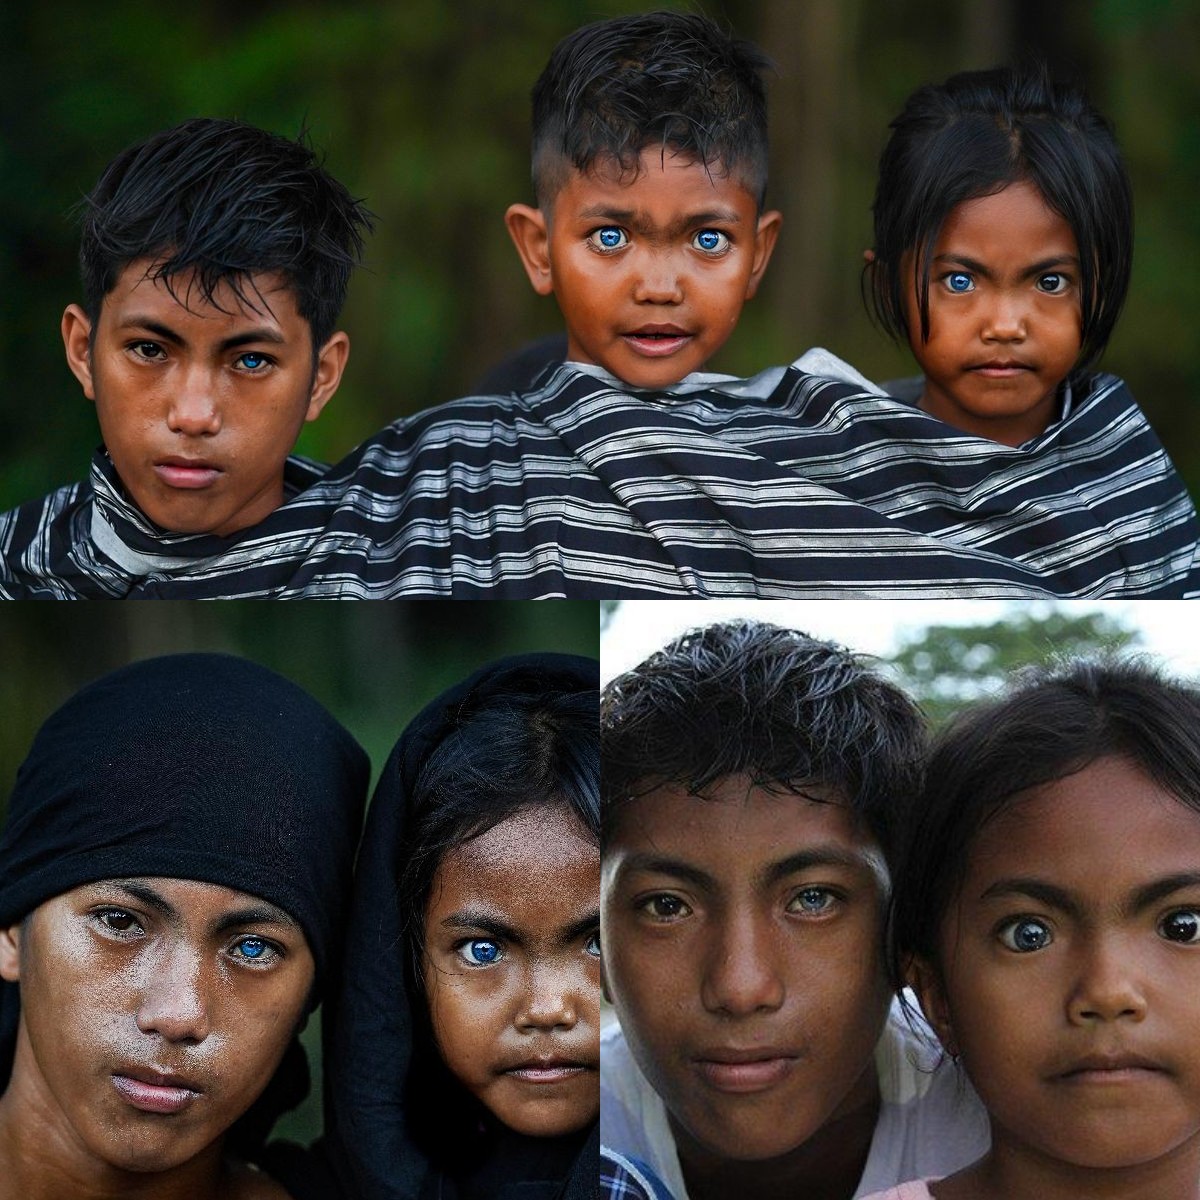 Menawan Bak Orang Eropa, Inilah 3 Suku di Indonesia yang Bermata Biru!